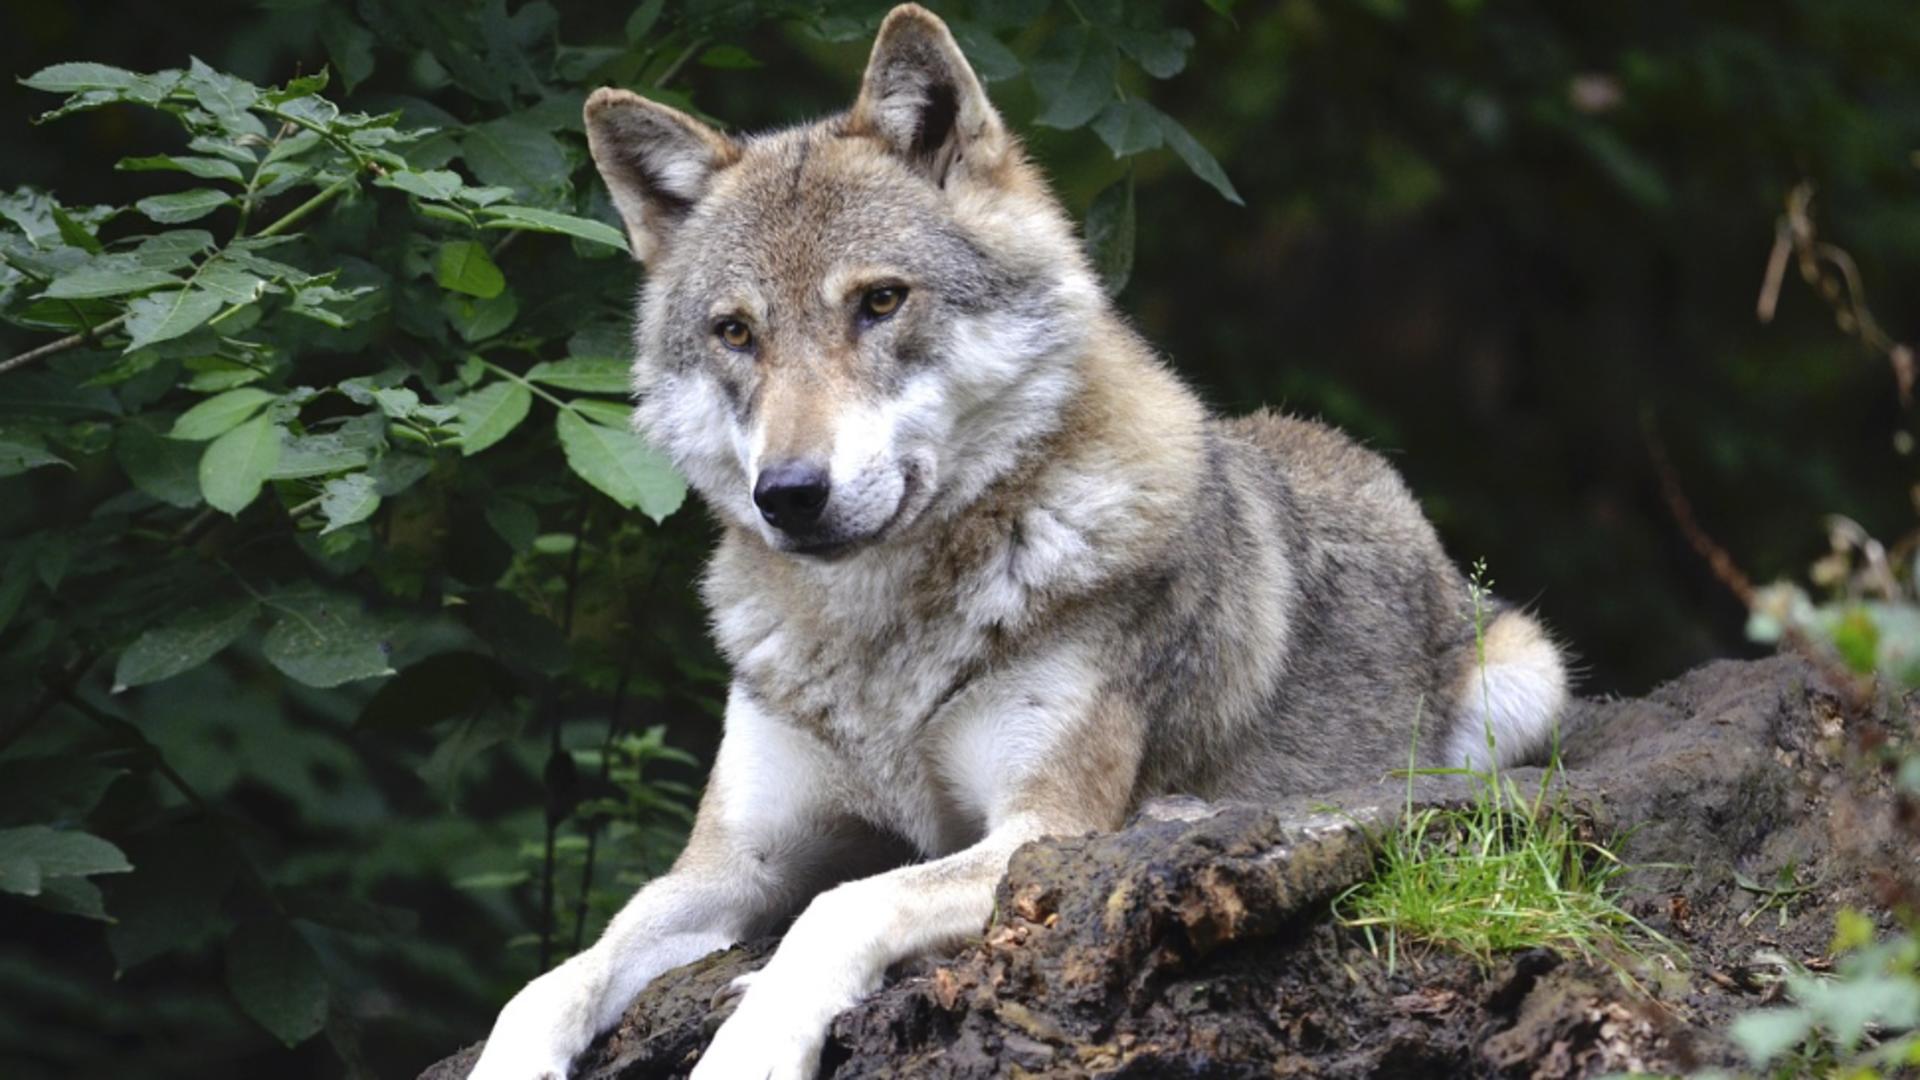 Premieră extraordinară: Primul hibrid lup-câine a fost descoperit în Carpaţii Meridionali. Specialiștii au confirmat